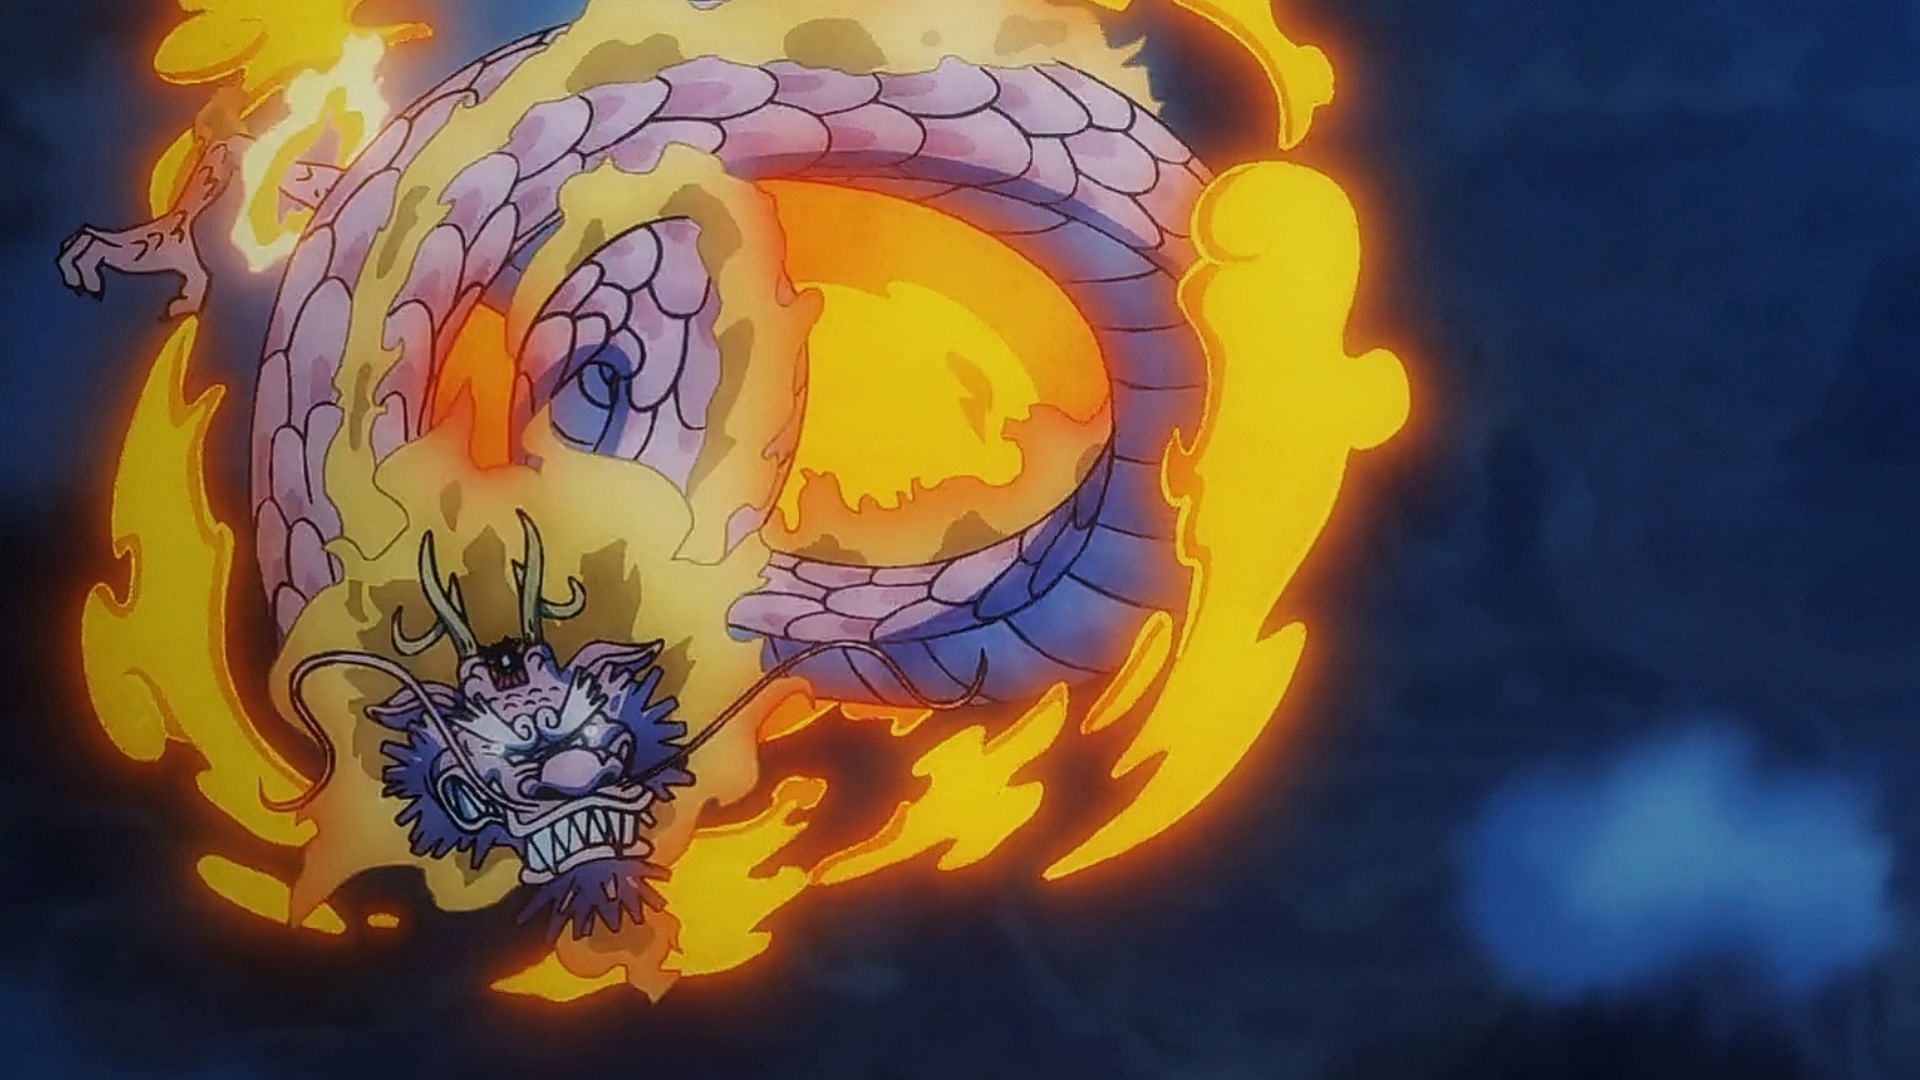 Momonosuke flying in One Piece Episode 1051 (Image via Toei Animation)